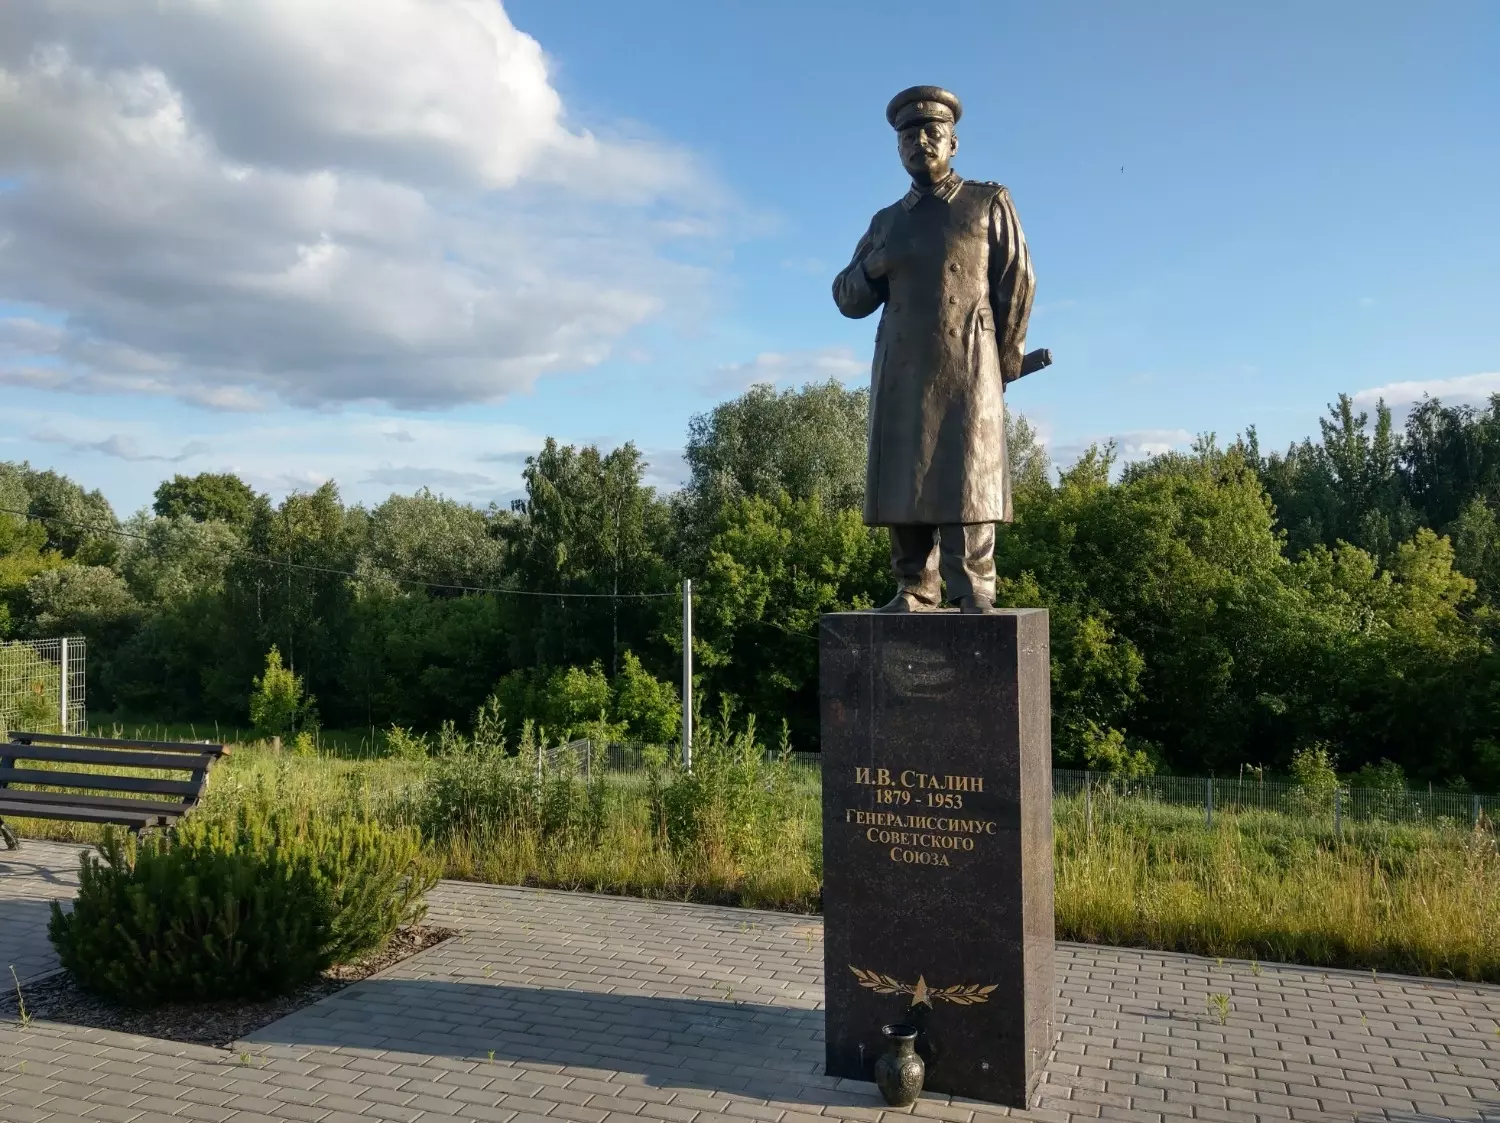 в г. Бор, как и в большинстве других мест, памятник Сталину из-за конфликта с местными властями установлен на частной территории